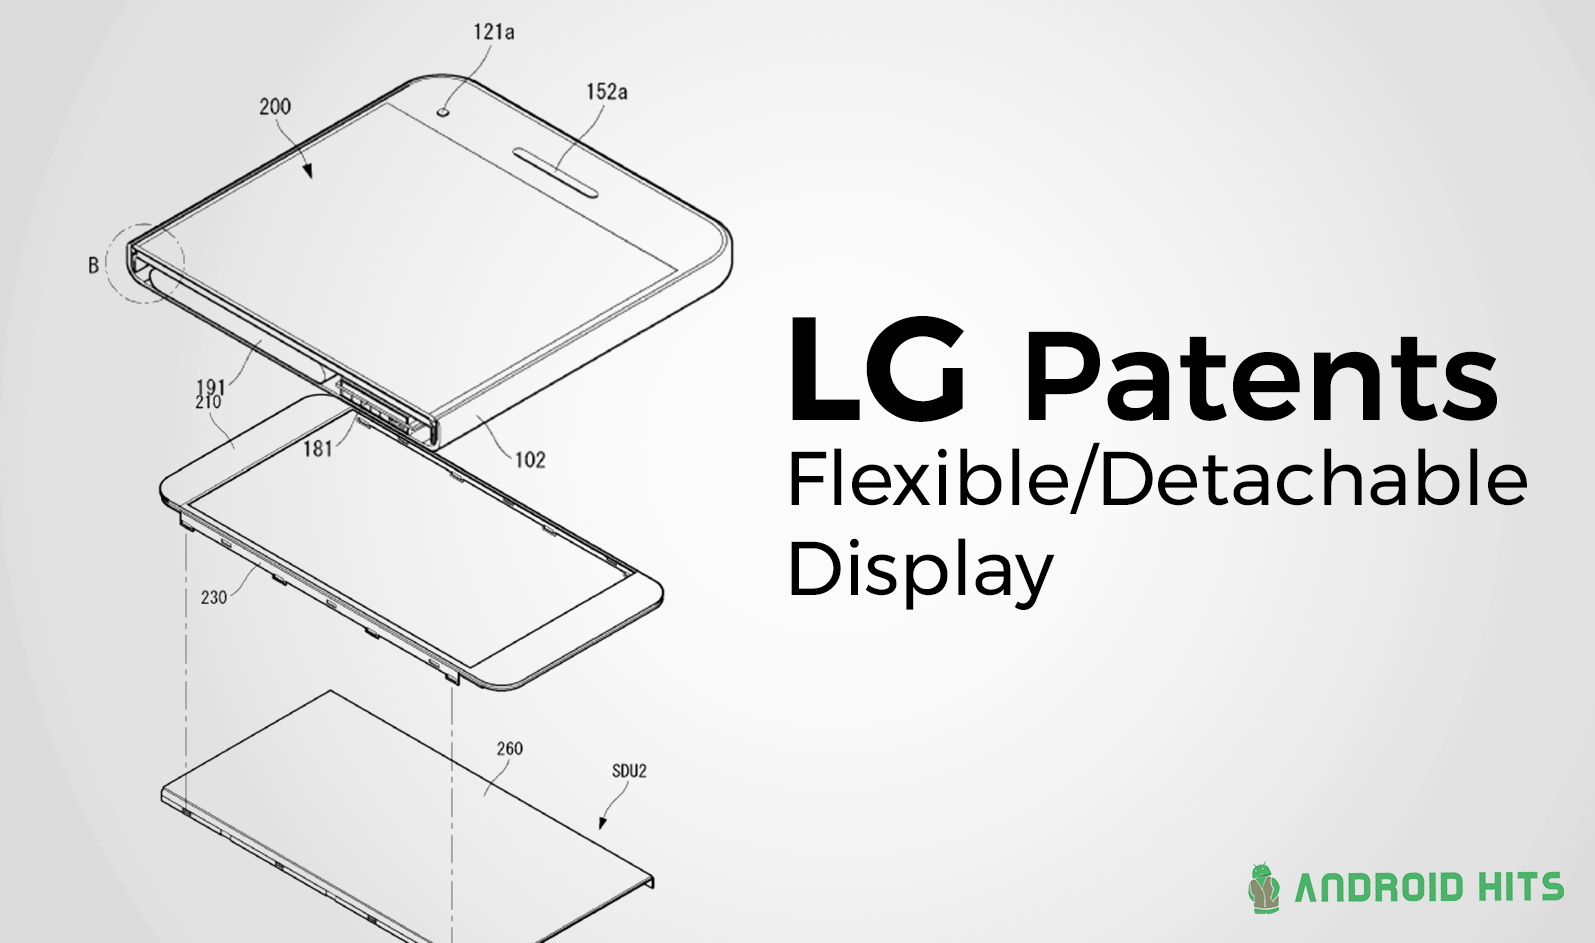 LG Patents Flexible/Detachable Smartphone design 1